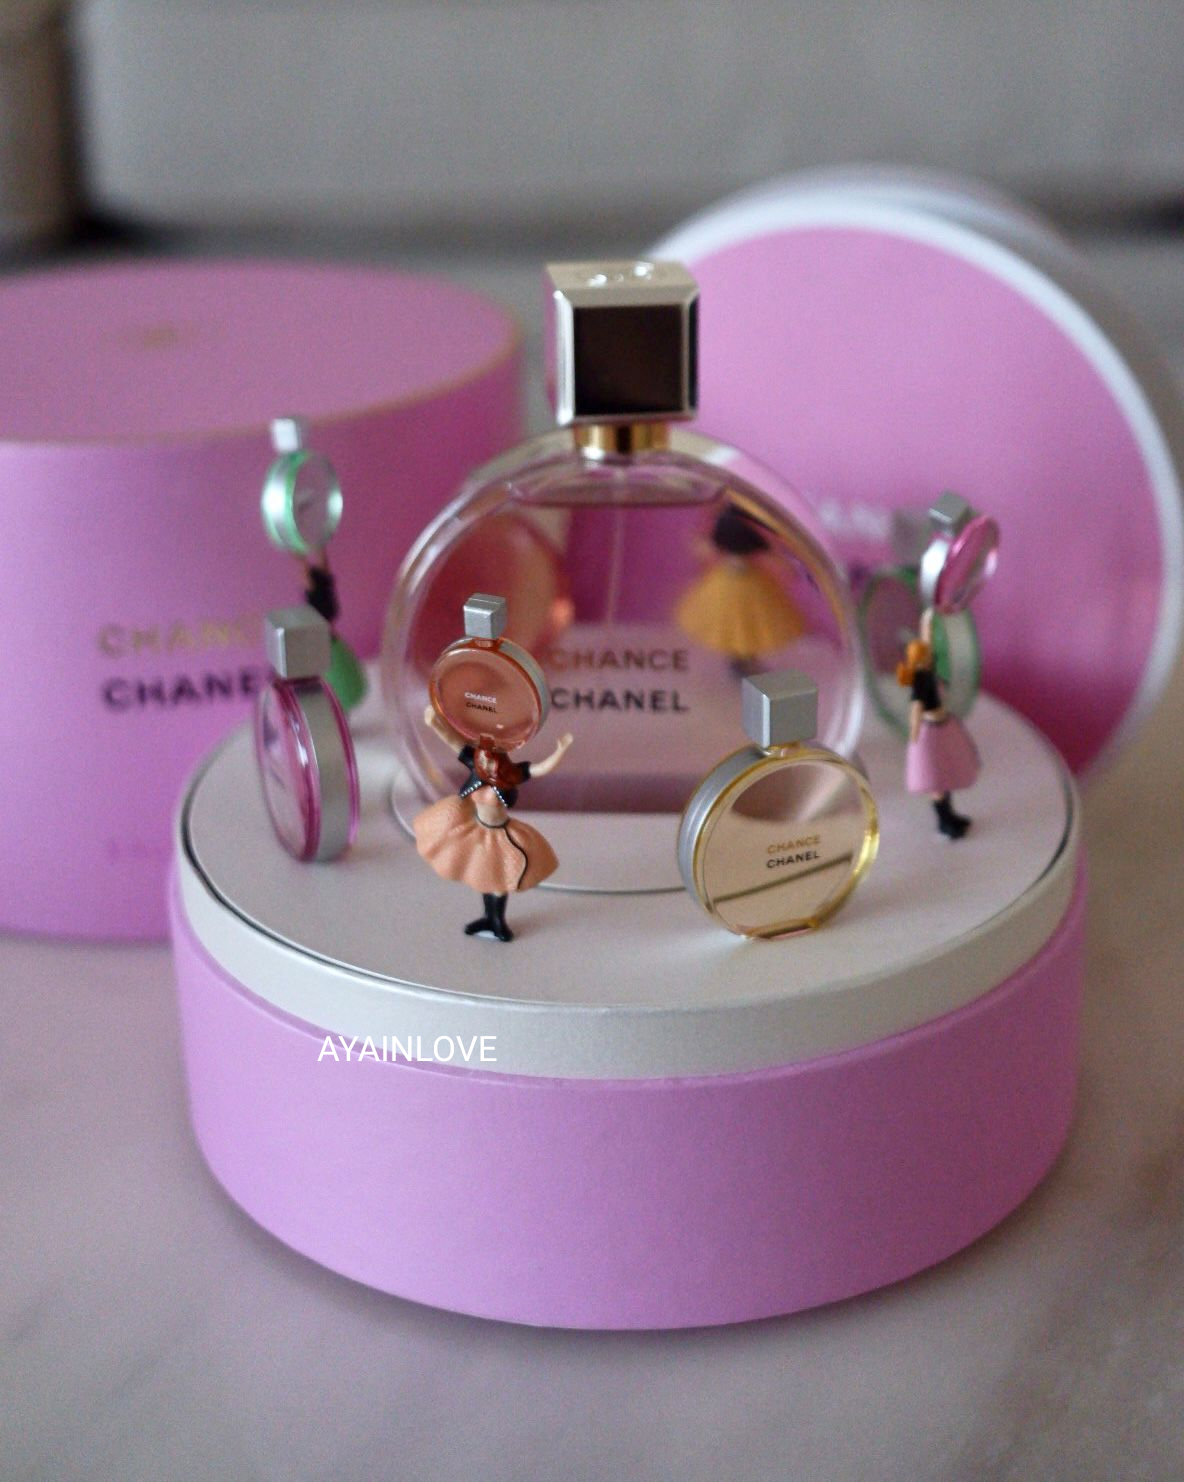 Qoo10 - Chanel Chance Eau Tendre Twist & Spray Eau De Toilette 3x20ml :  Perfume & Luxury Beauty